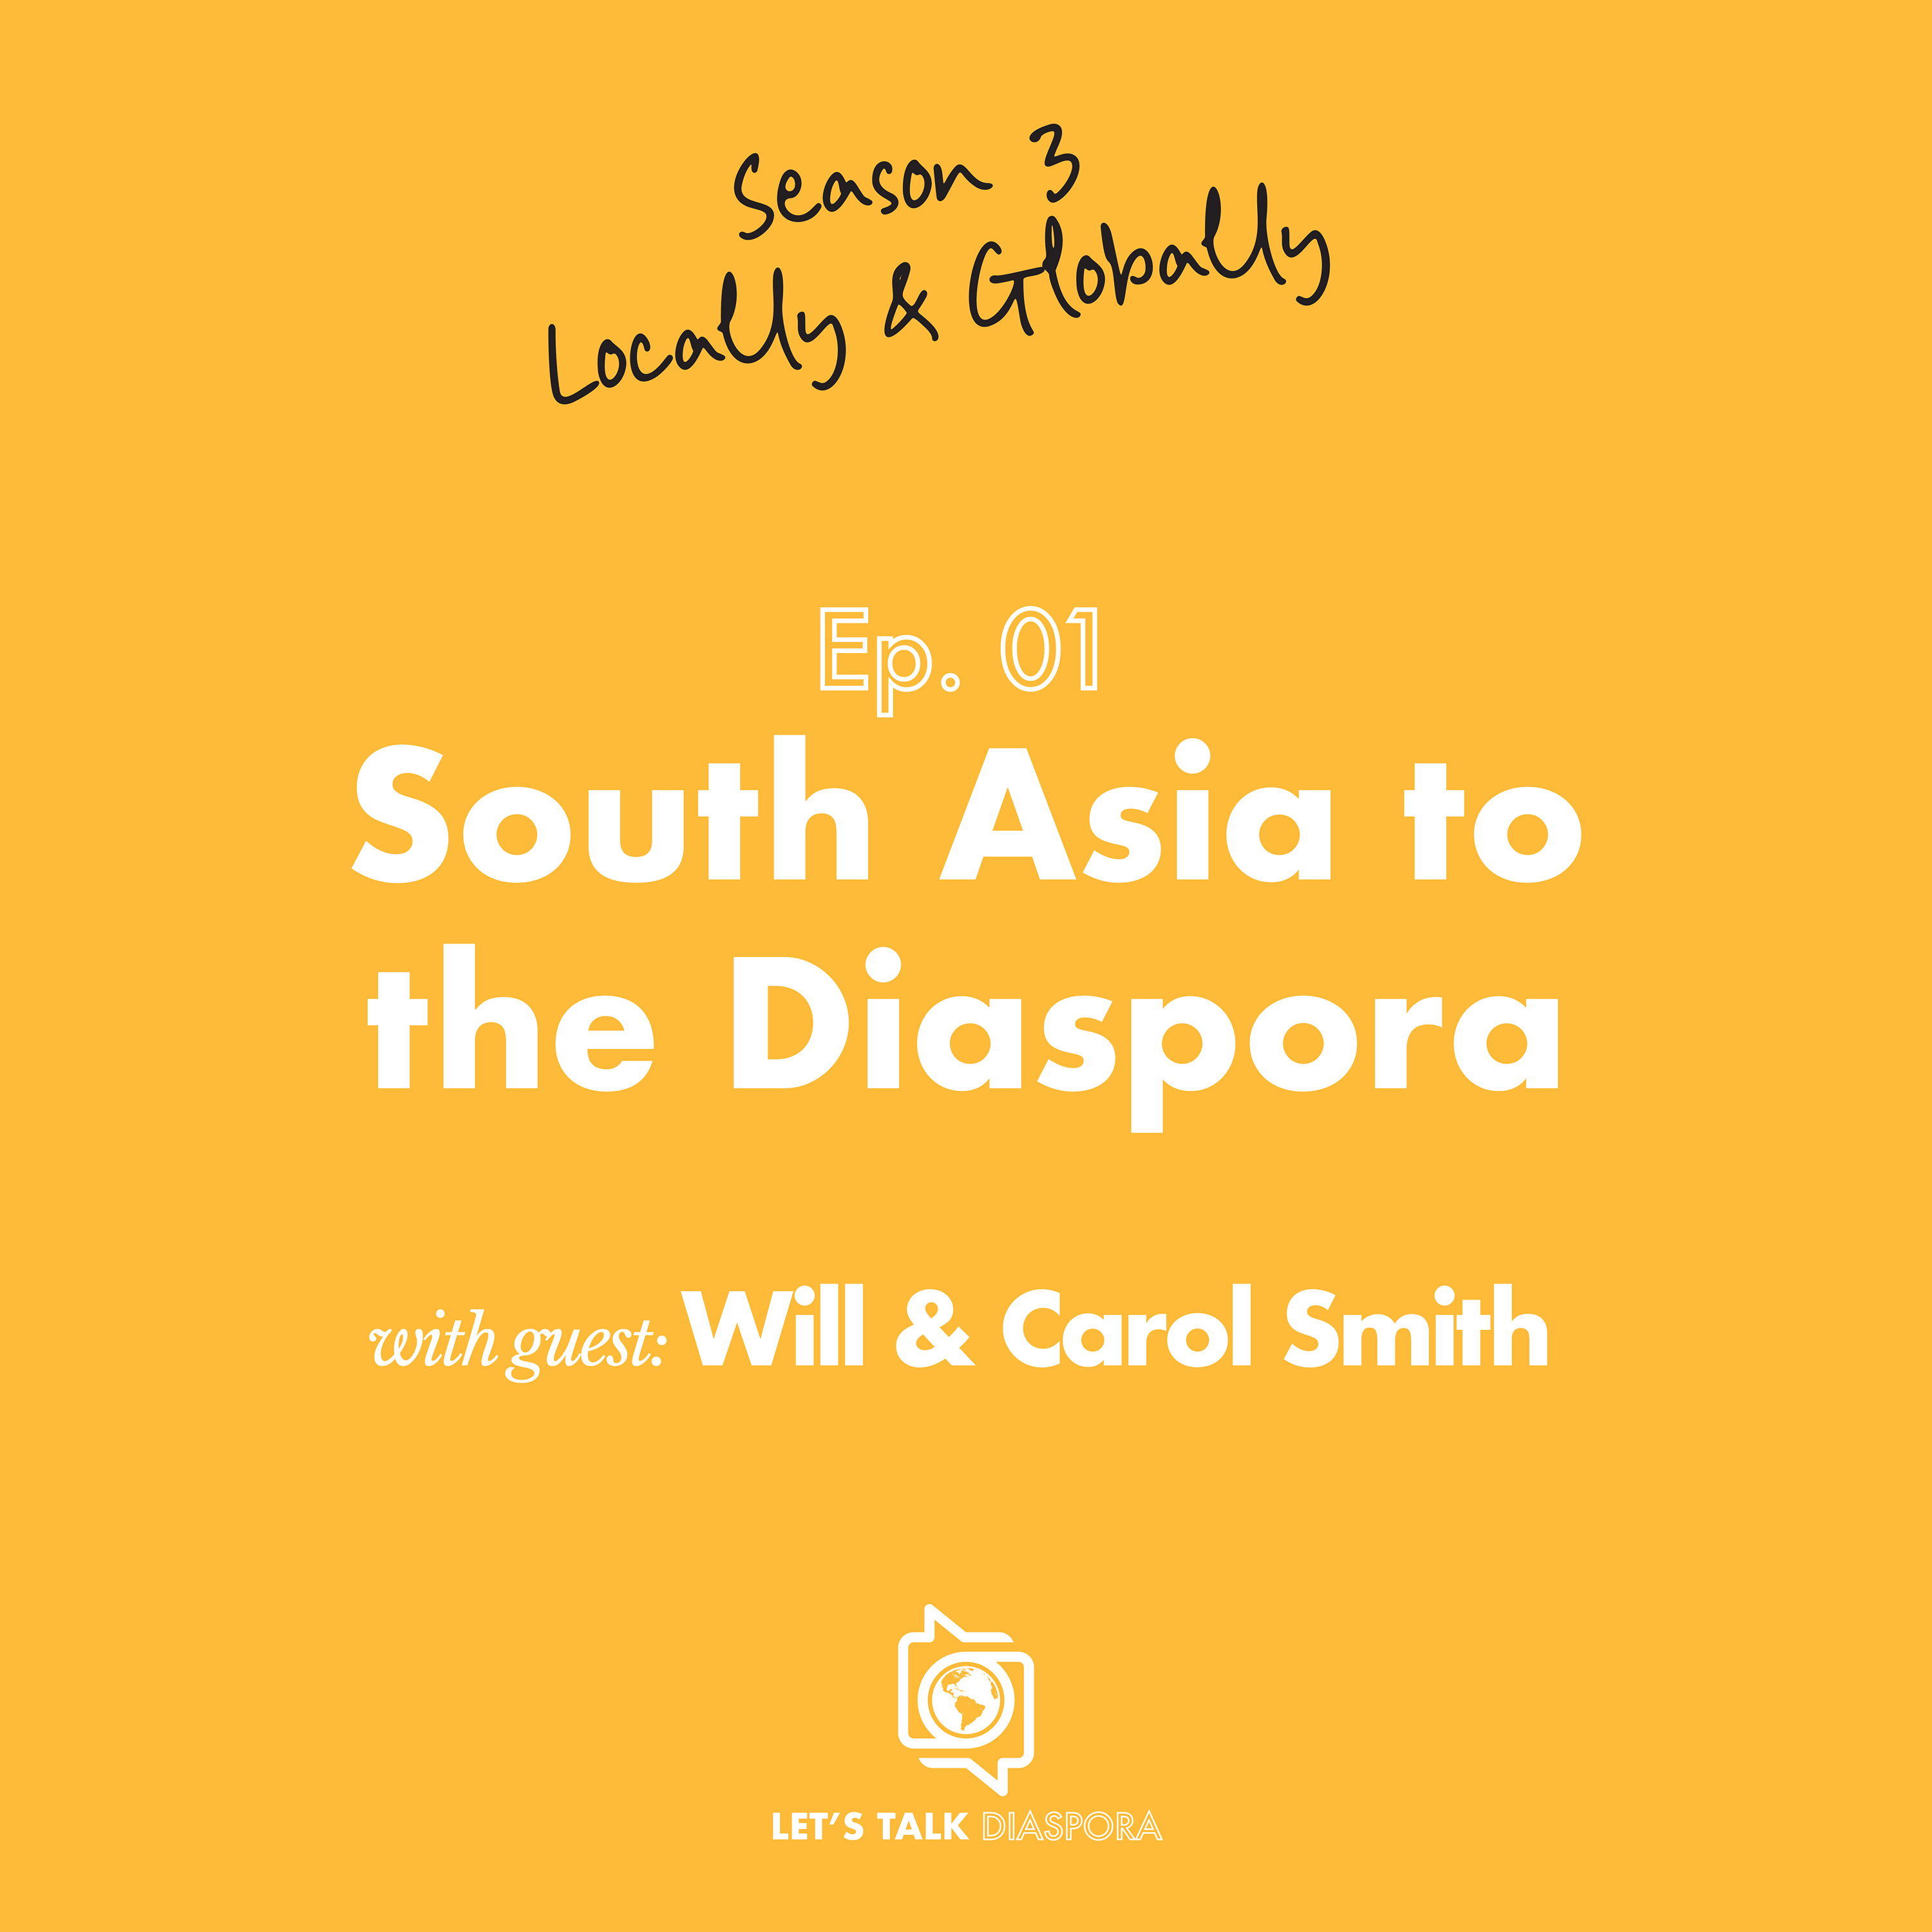 South Asia to the Diaspora